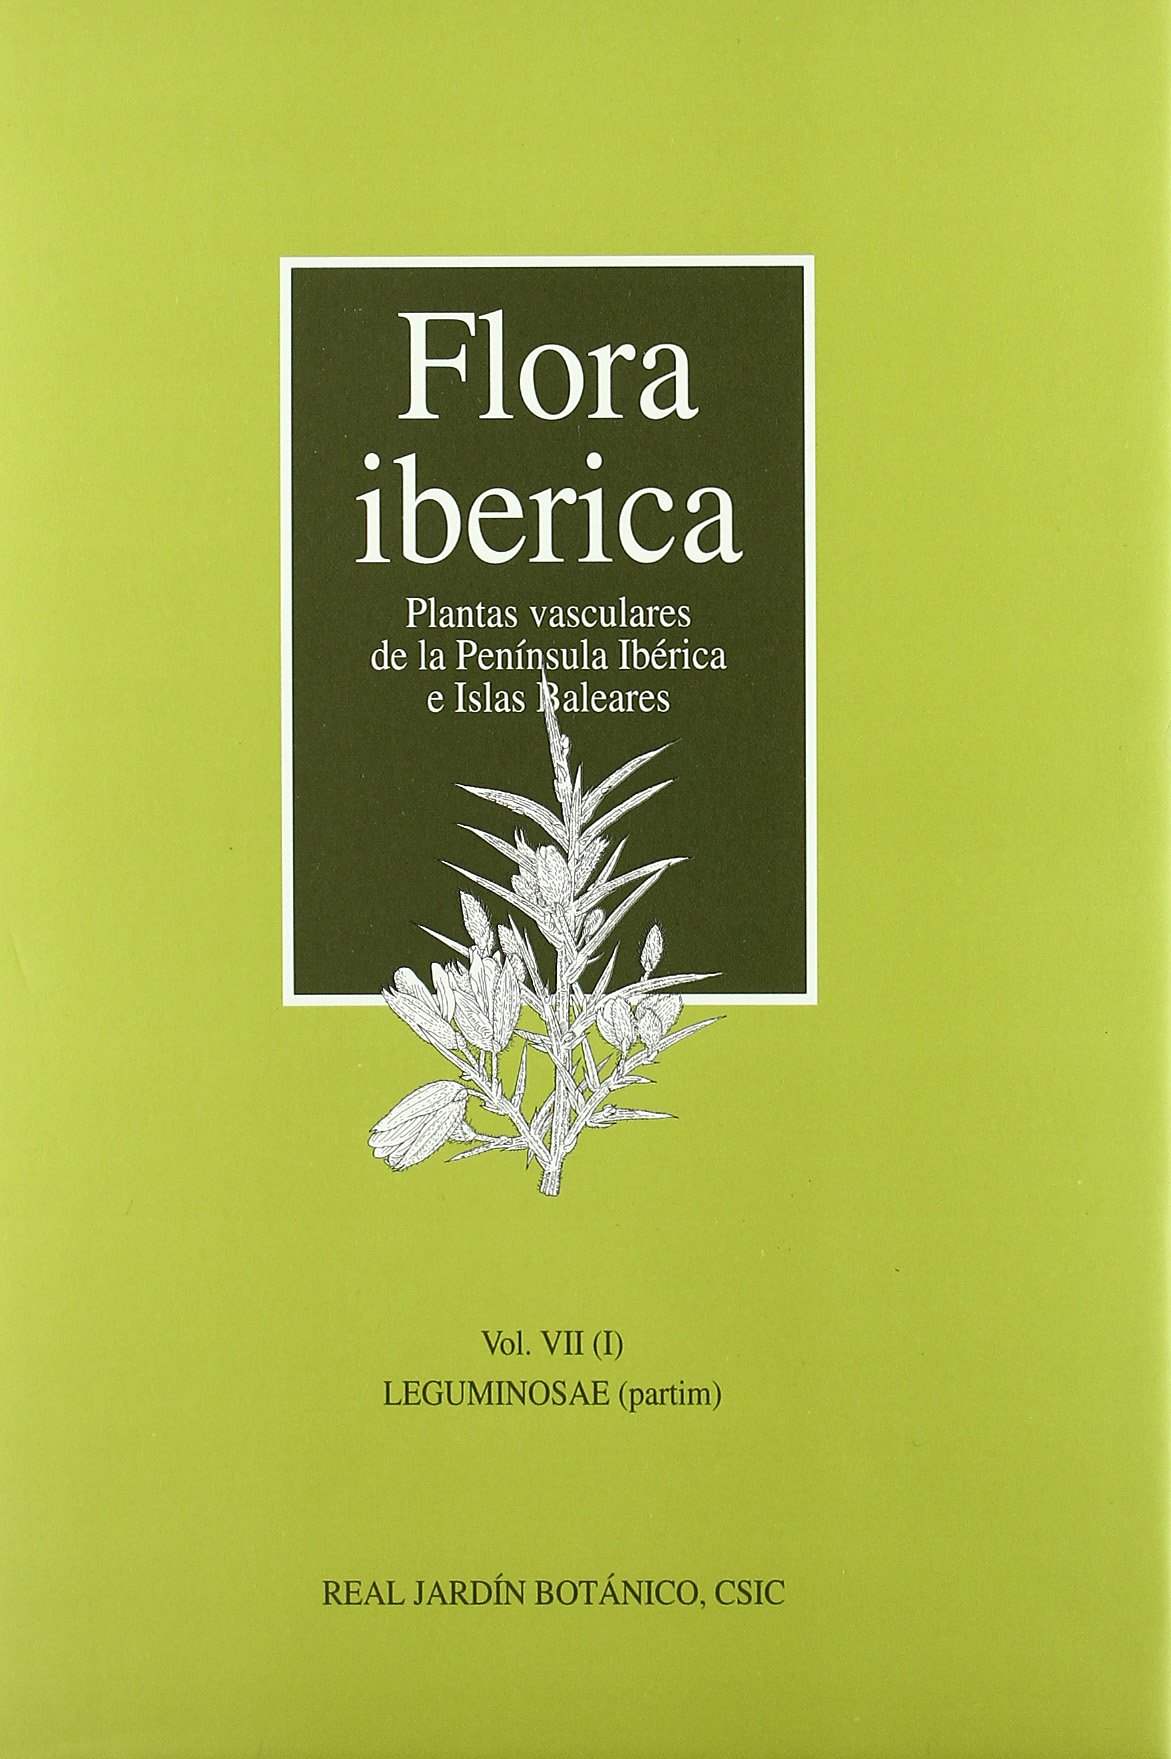 Imagen de portada del libro Flora ibérica: plantas vasculares de la Península Ibérica e Islas Baleares